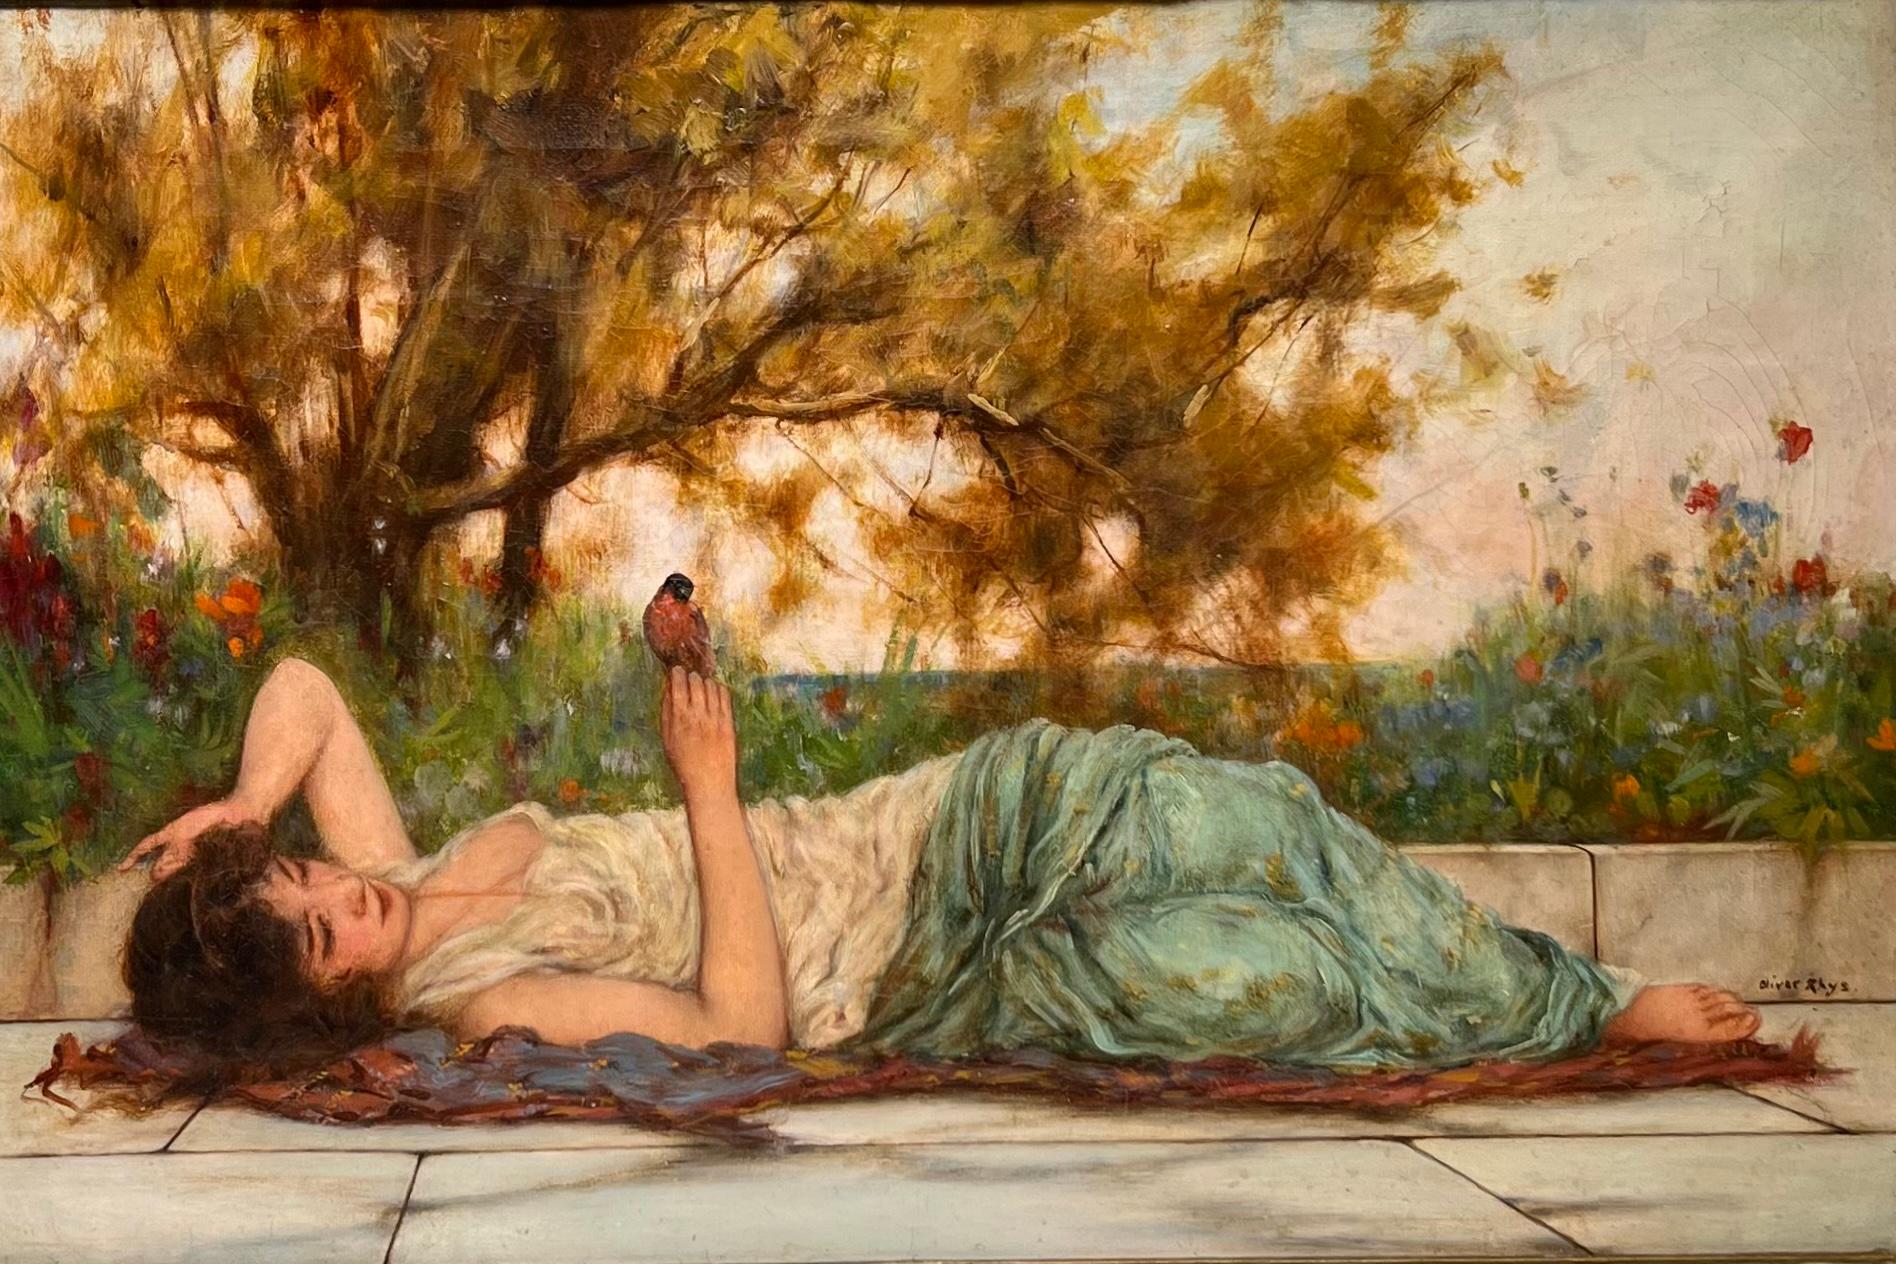 Oliver Rhys (1876-1893) war ein bedeutender englischer akademischer Maler des 19. Jahrhunderts, der für seine Gemälde griechischer Frauen bekannt war.

Seine Gemälde wurden bei Sothebys und Christie's weit über 30.000 $ verkauft.

Das zum Verkauf